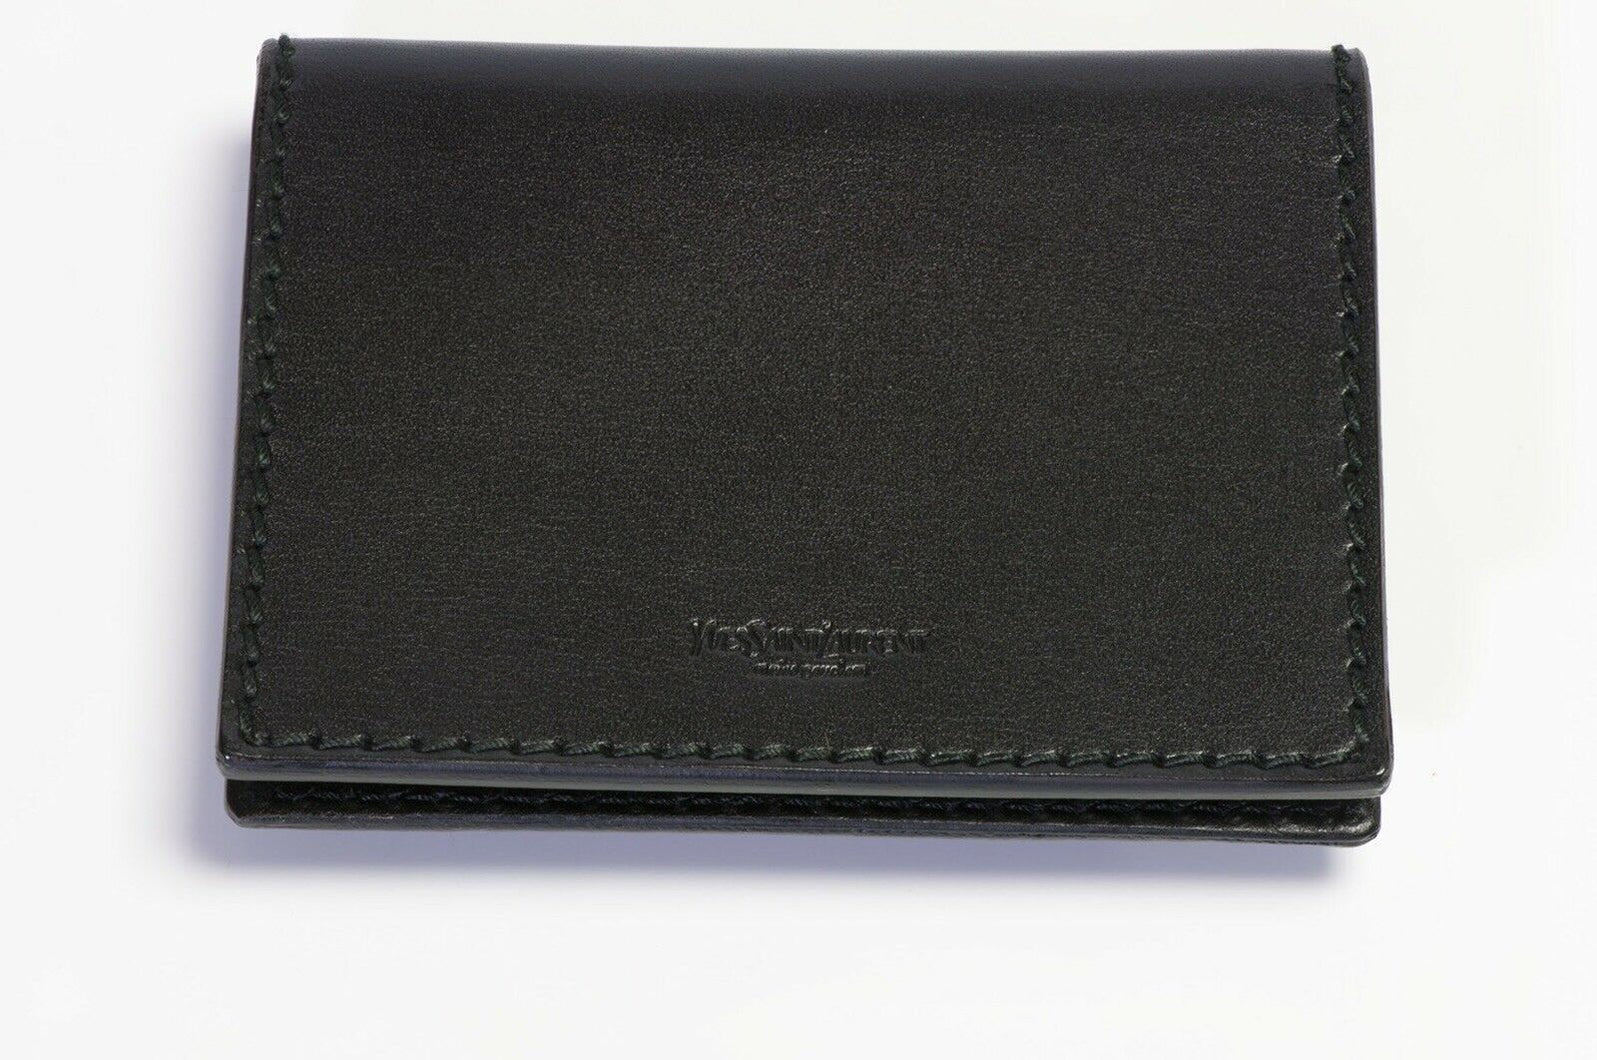 Yves Saint Laurent Tom Ford 2001 Black Leather Grommet Wallet